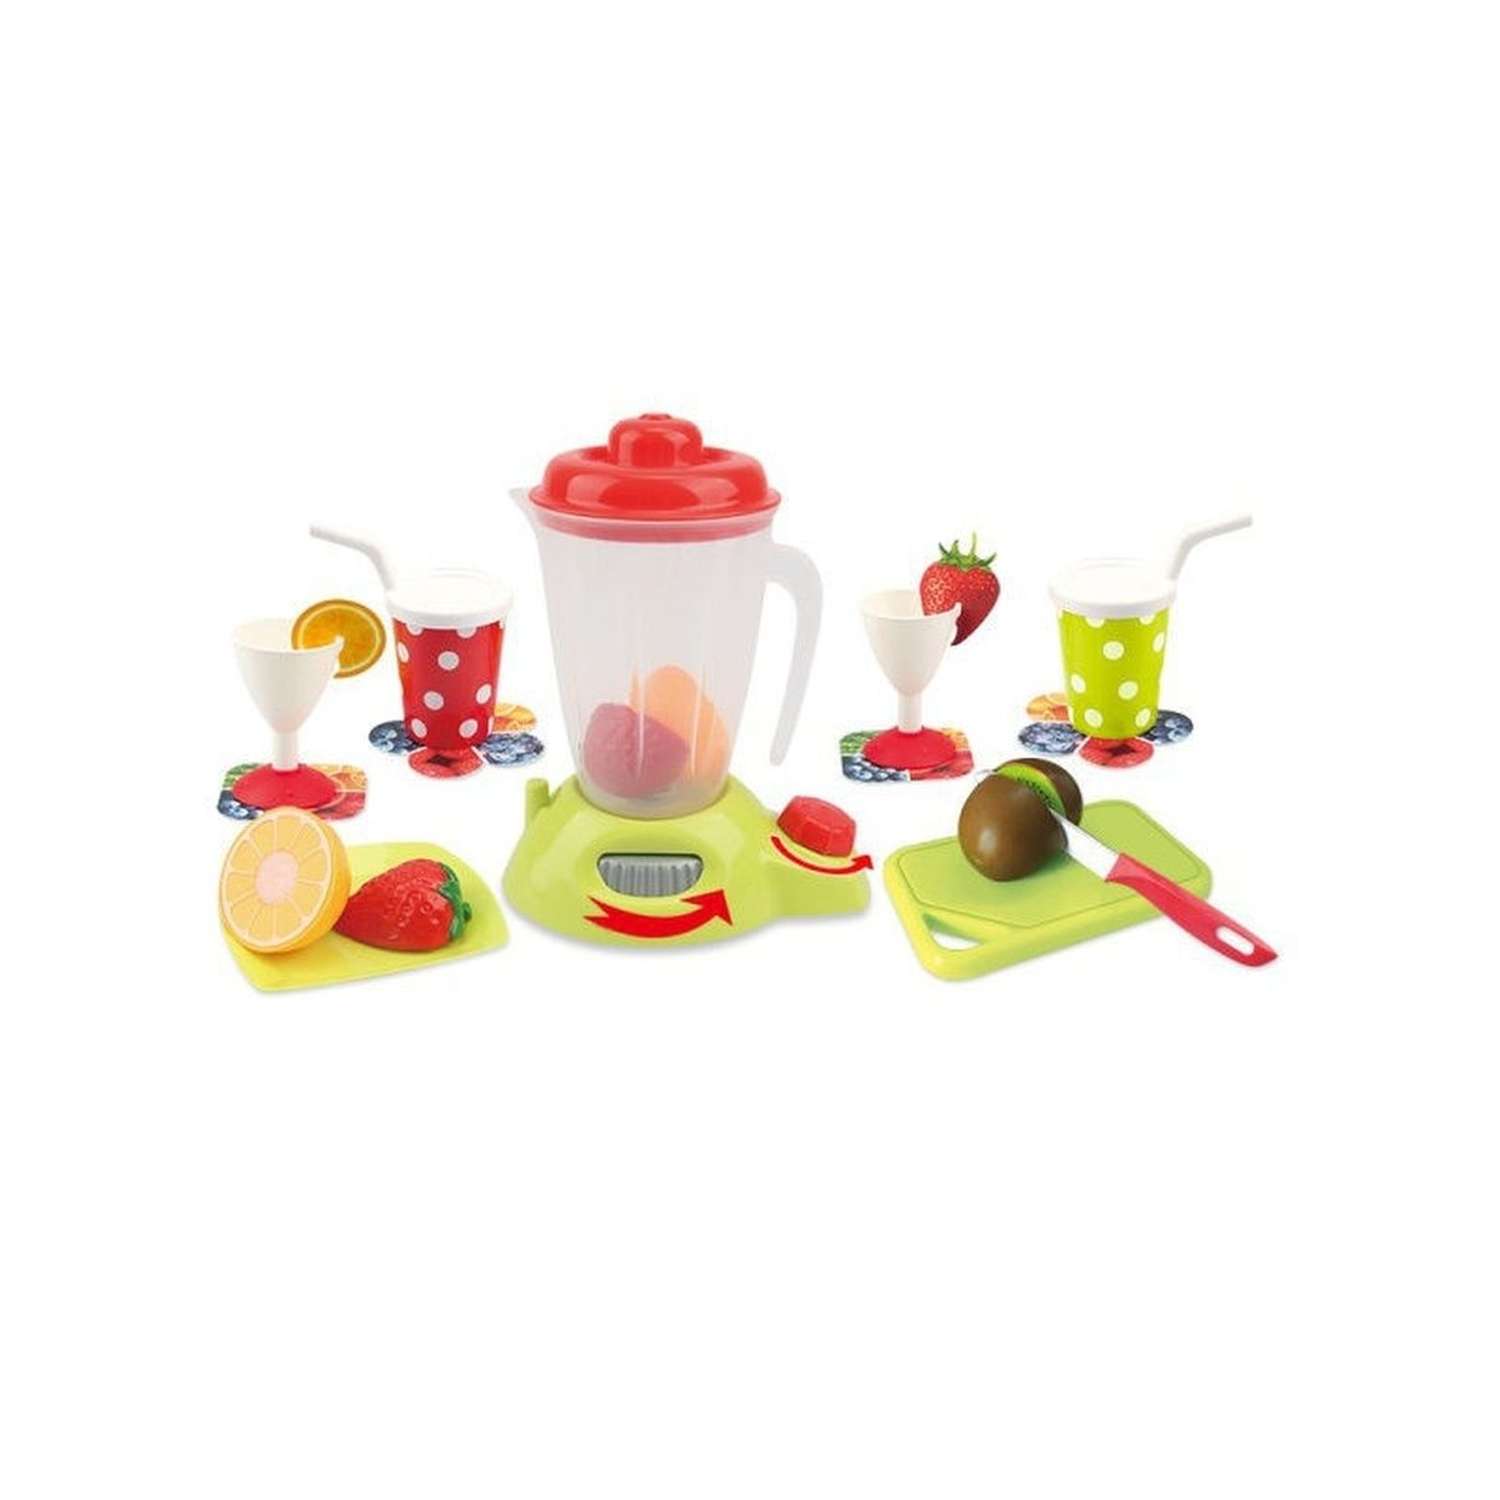 Детская посуда игрушечная HUADA набор для готовки с фруктами - фото 4